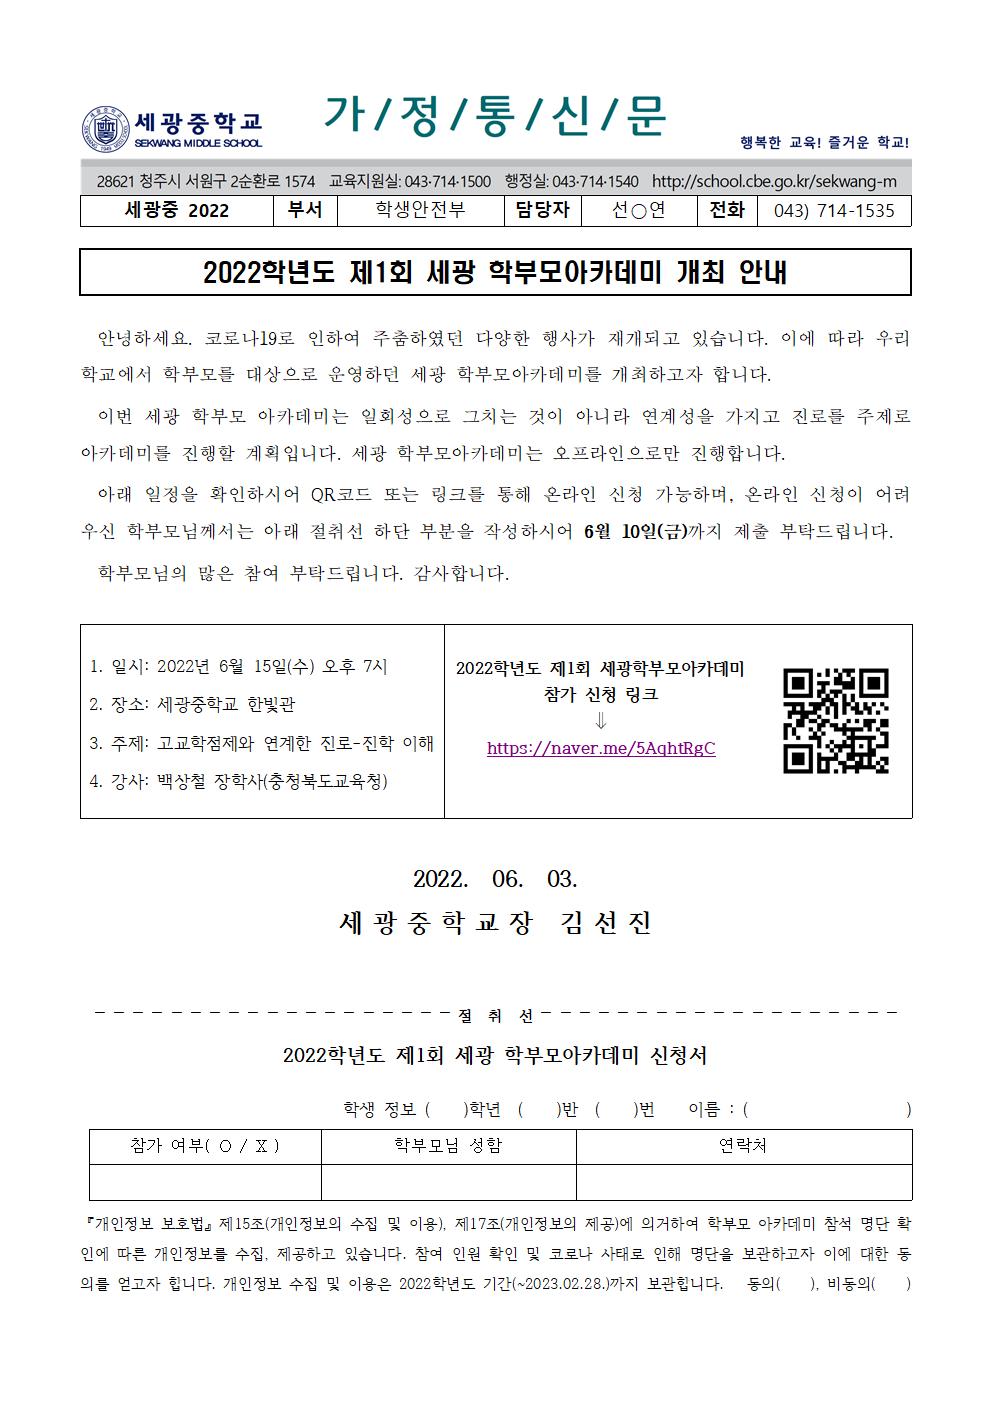 2022학년도 제1회 세광학부모아카데미 개최 안내 및 참가 신청서 작성(0607)001